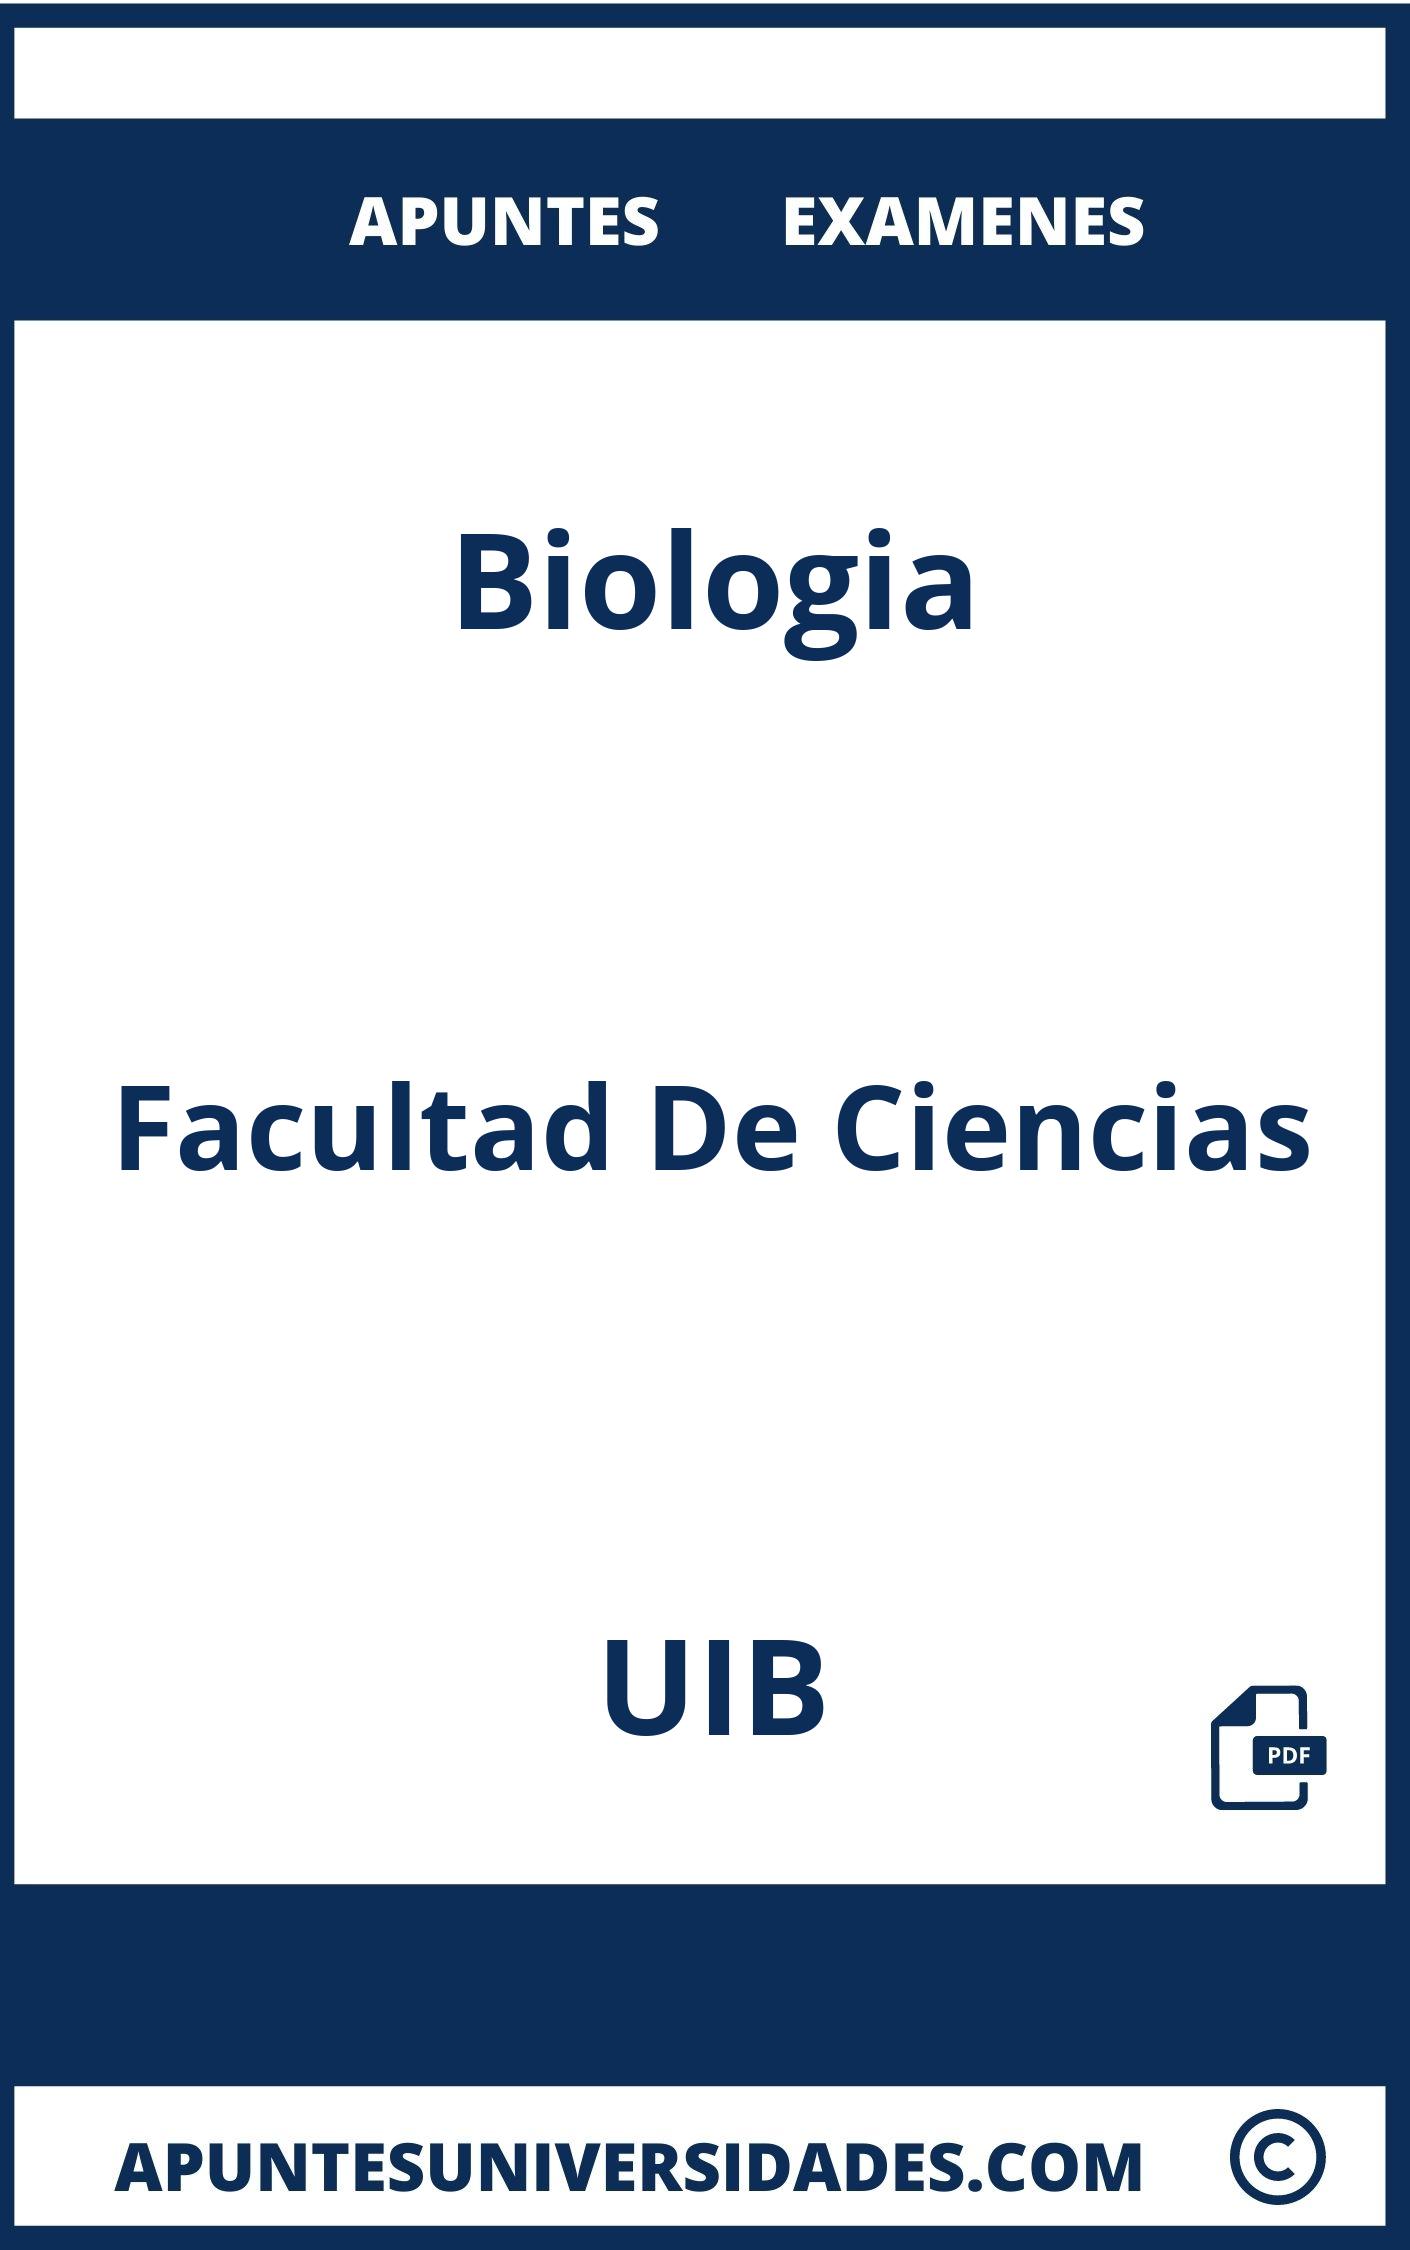 Examenes y Apuntes de Biologia UIB